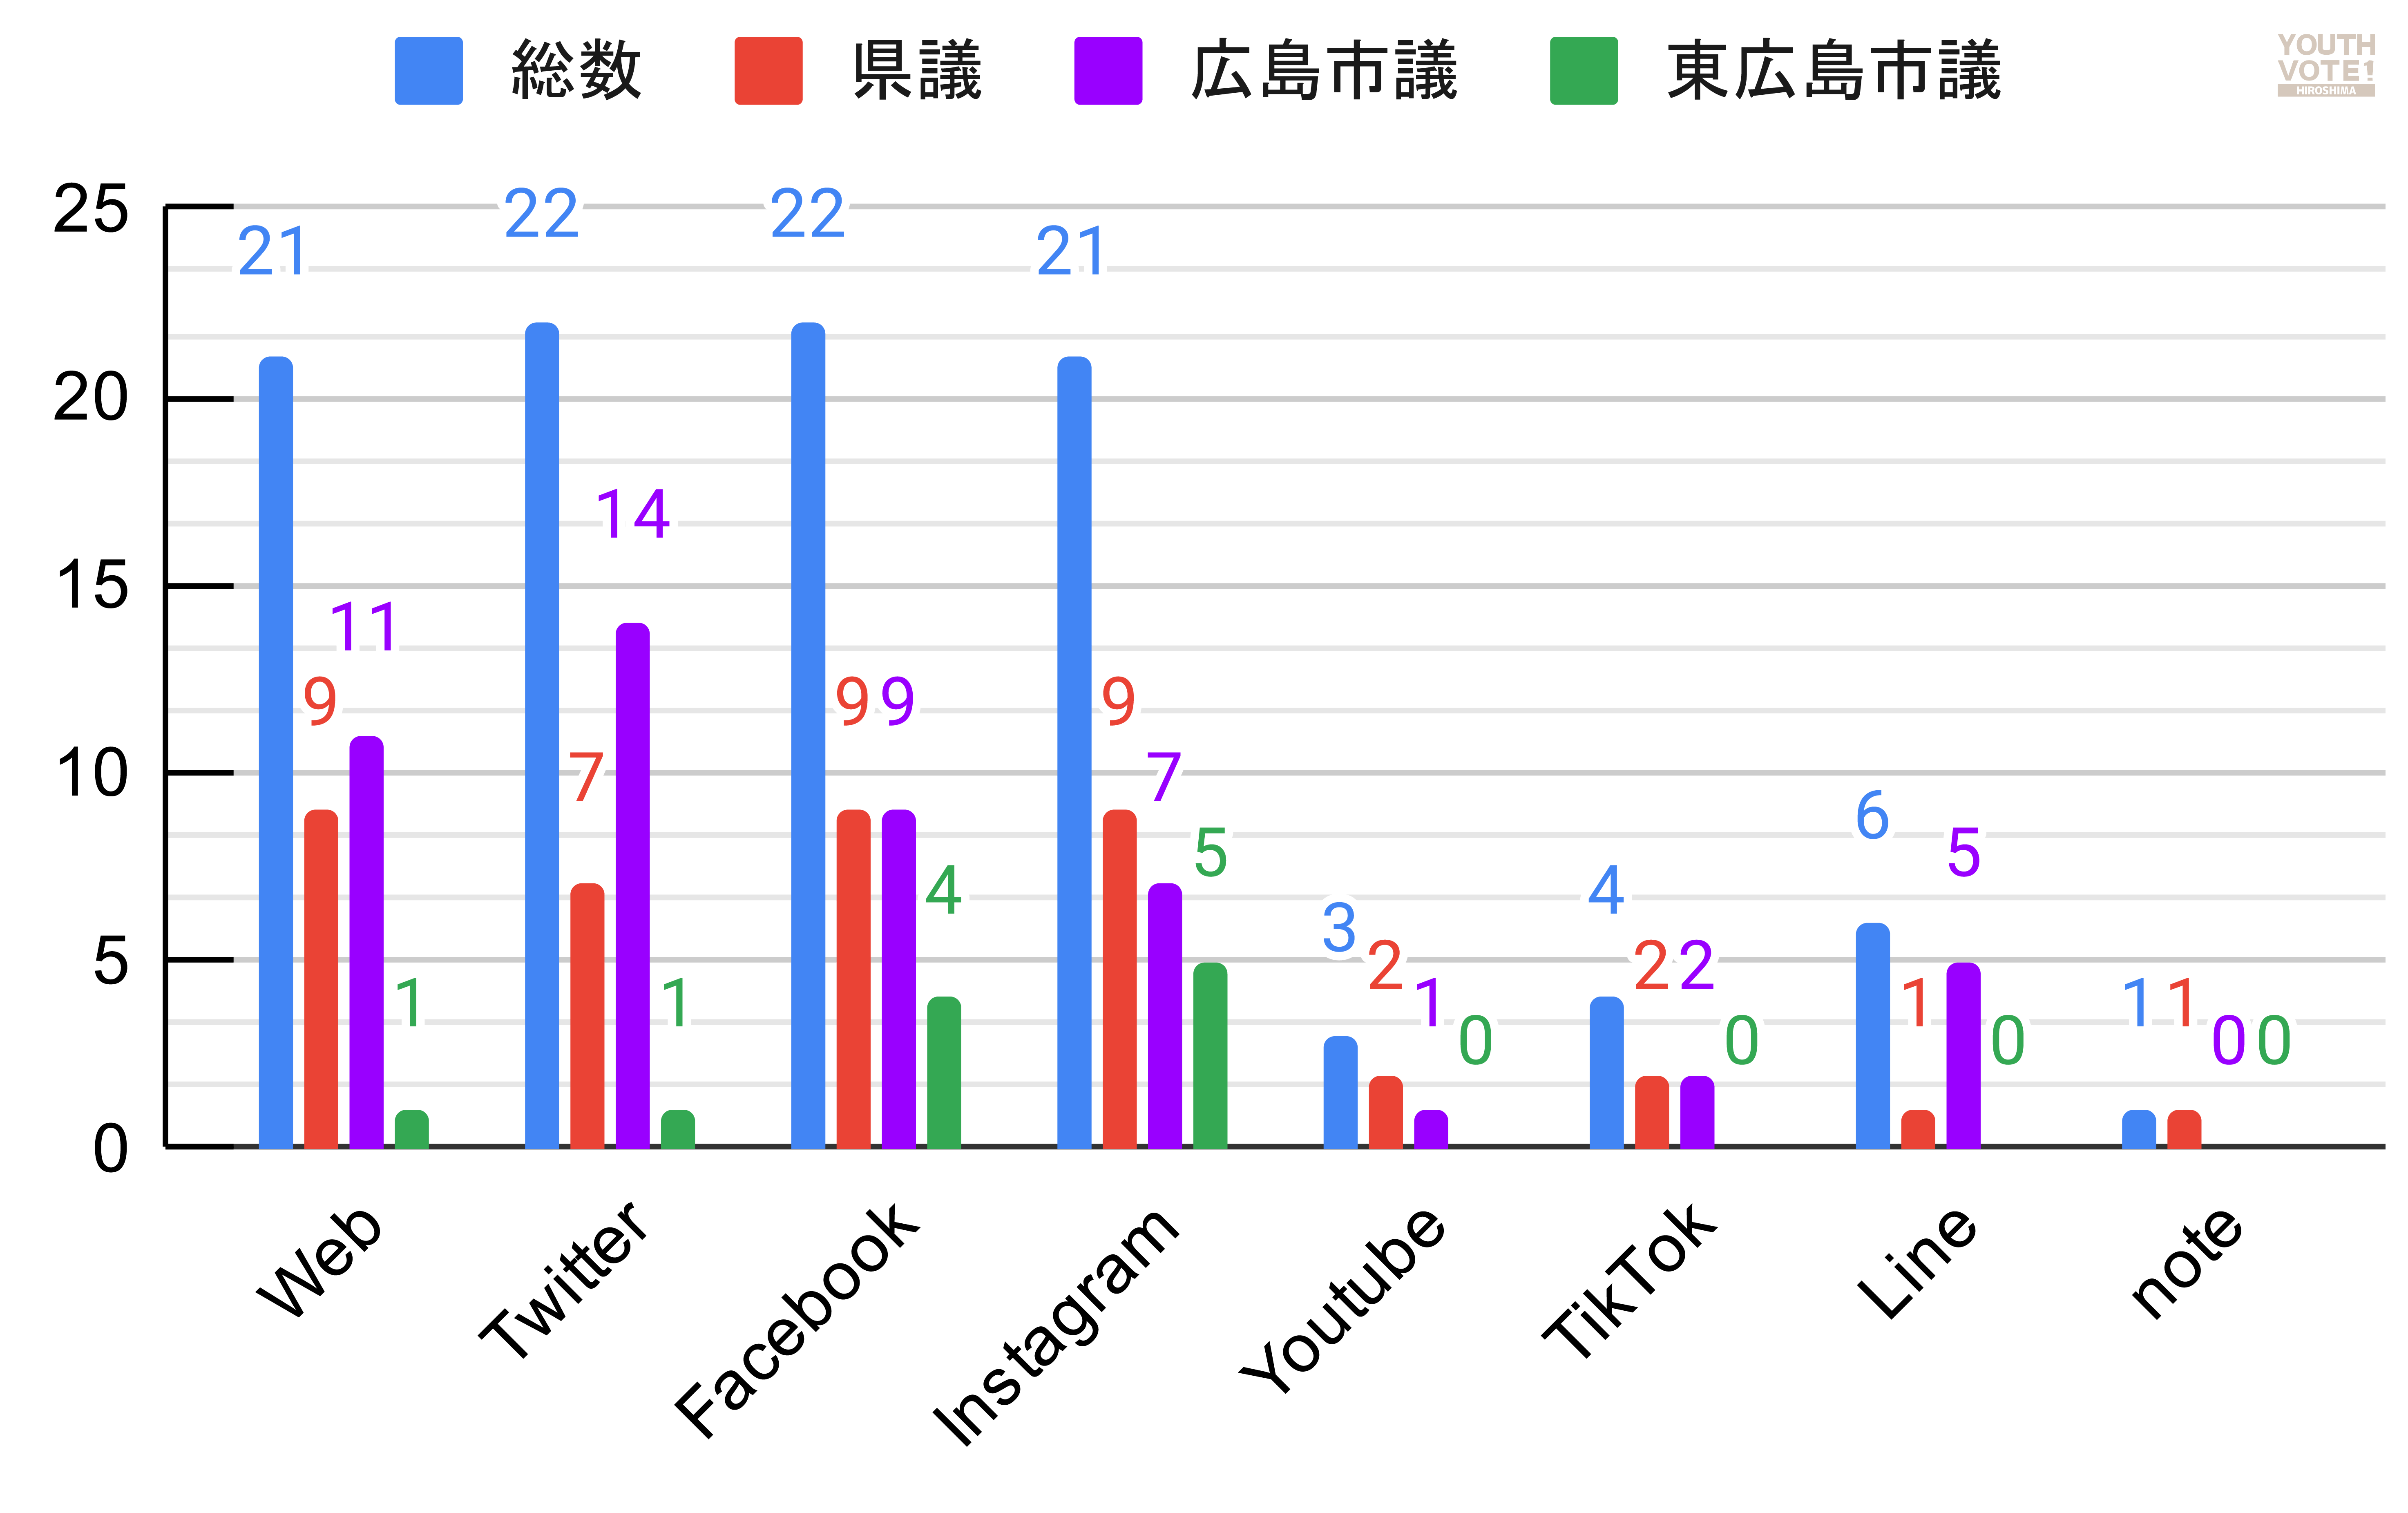 統一地方選挙2023で広島県議と広島市議及び東広島市議の立候補者に質問したSNSの活用状況を示す円グラフです